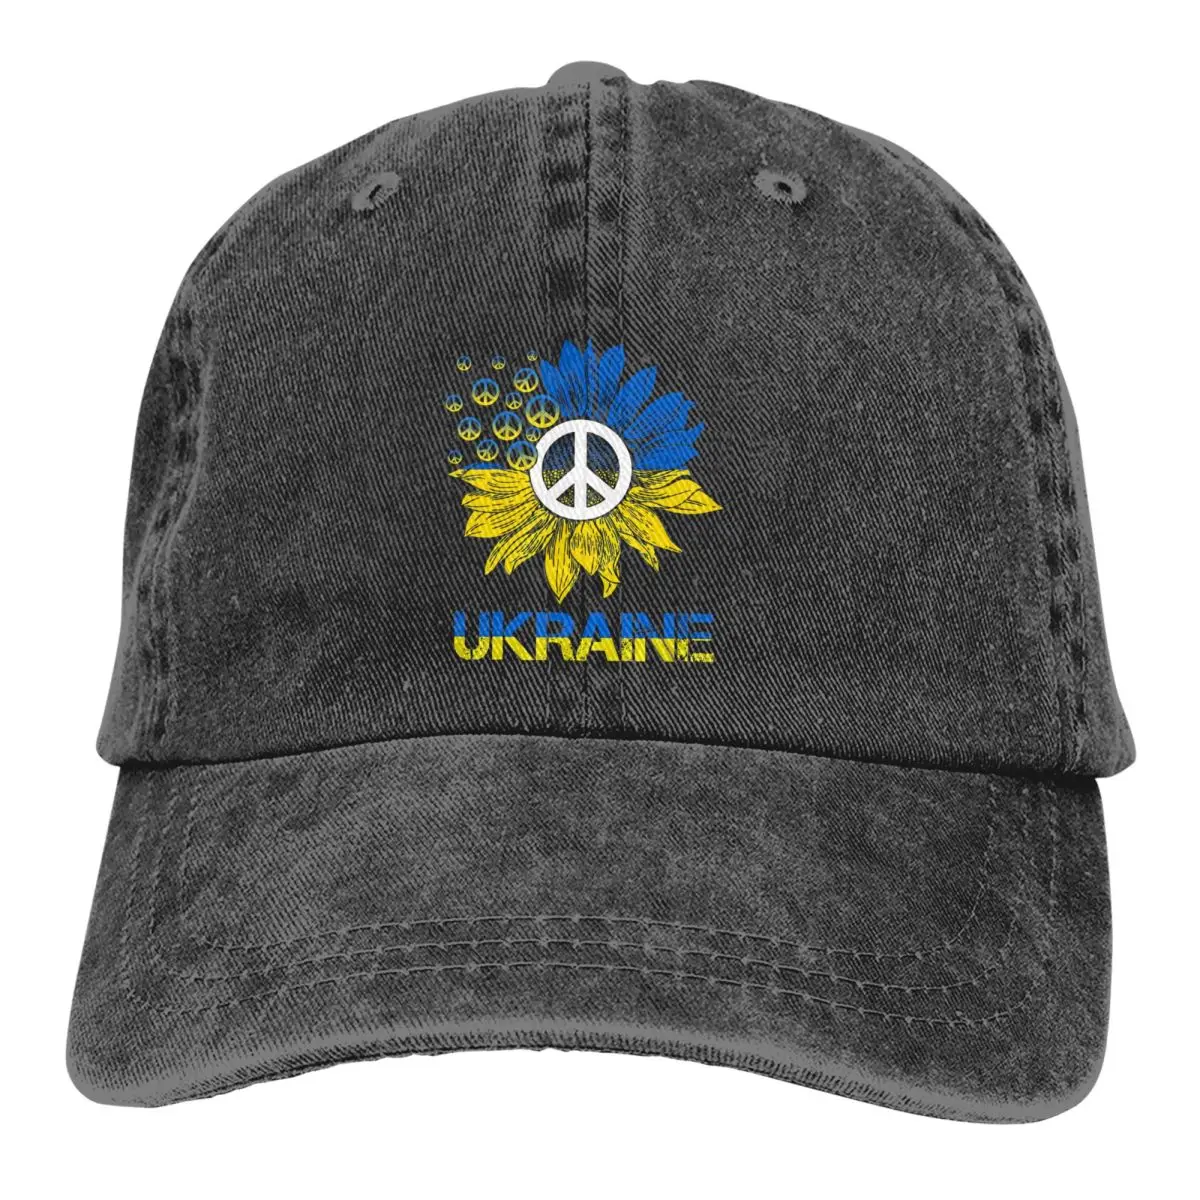 Peace For Ukraine Sunflower1 Baseball Caps Peaked Cap Sun Shade Hats for Men Women